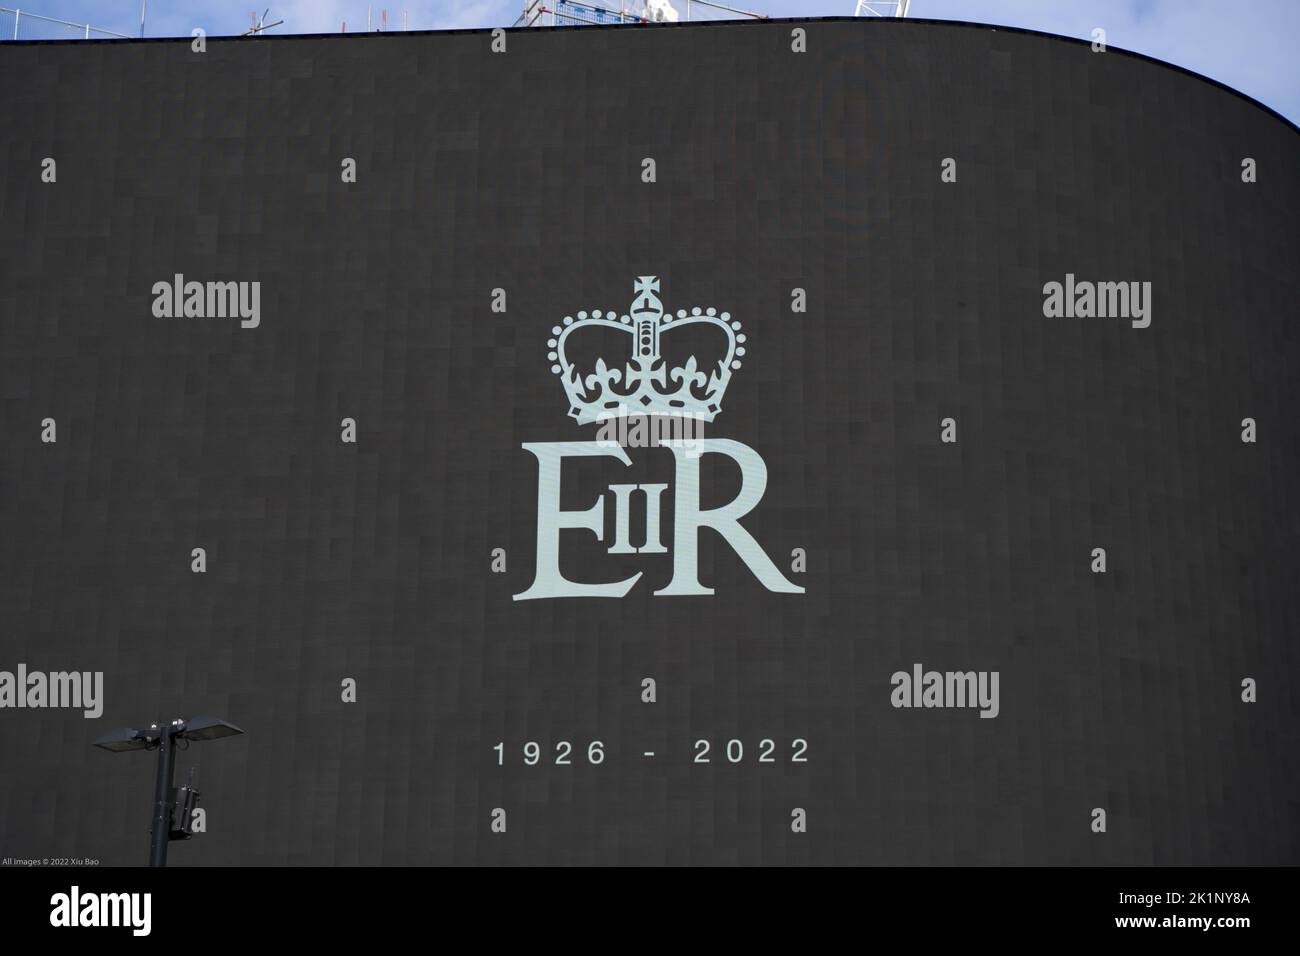 Londres, Reino Unido, 9th de septiembre de 2022. El Royal Cypher EIIR se muestra en un cartel digital en el centro del oeste de Londres para rendir homenaje a Su Majestad la Reina y conmemorar su largo servicio a nuestra nación. Crédito: Xiu Bao/Alamy Live News Foto de stock